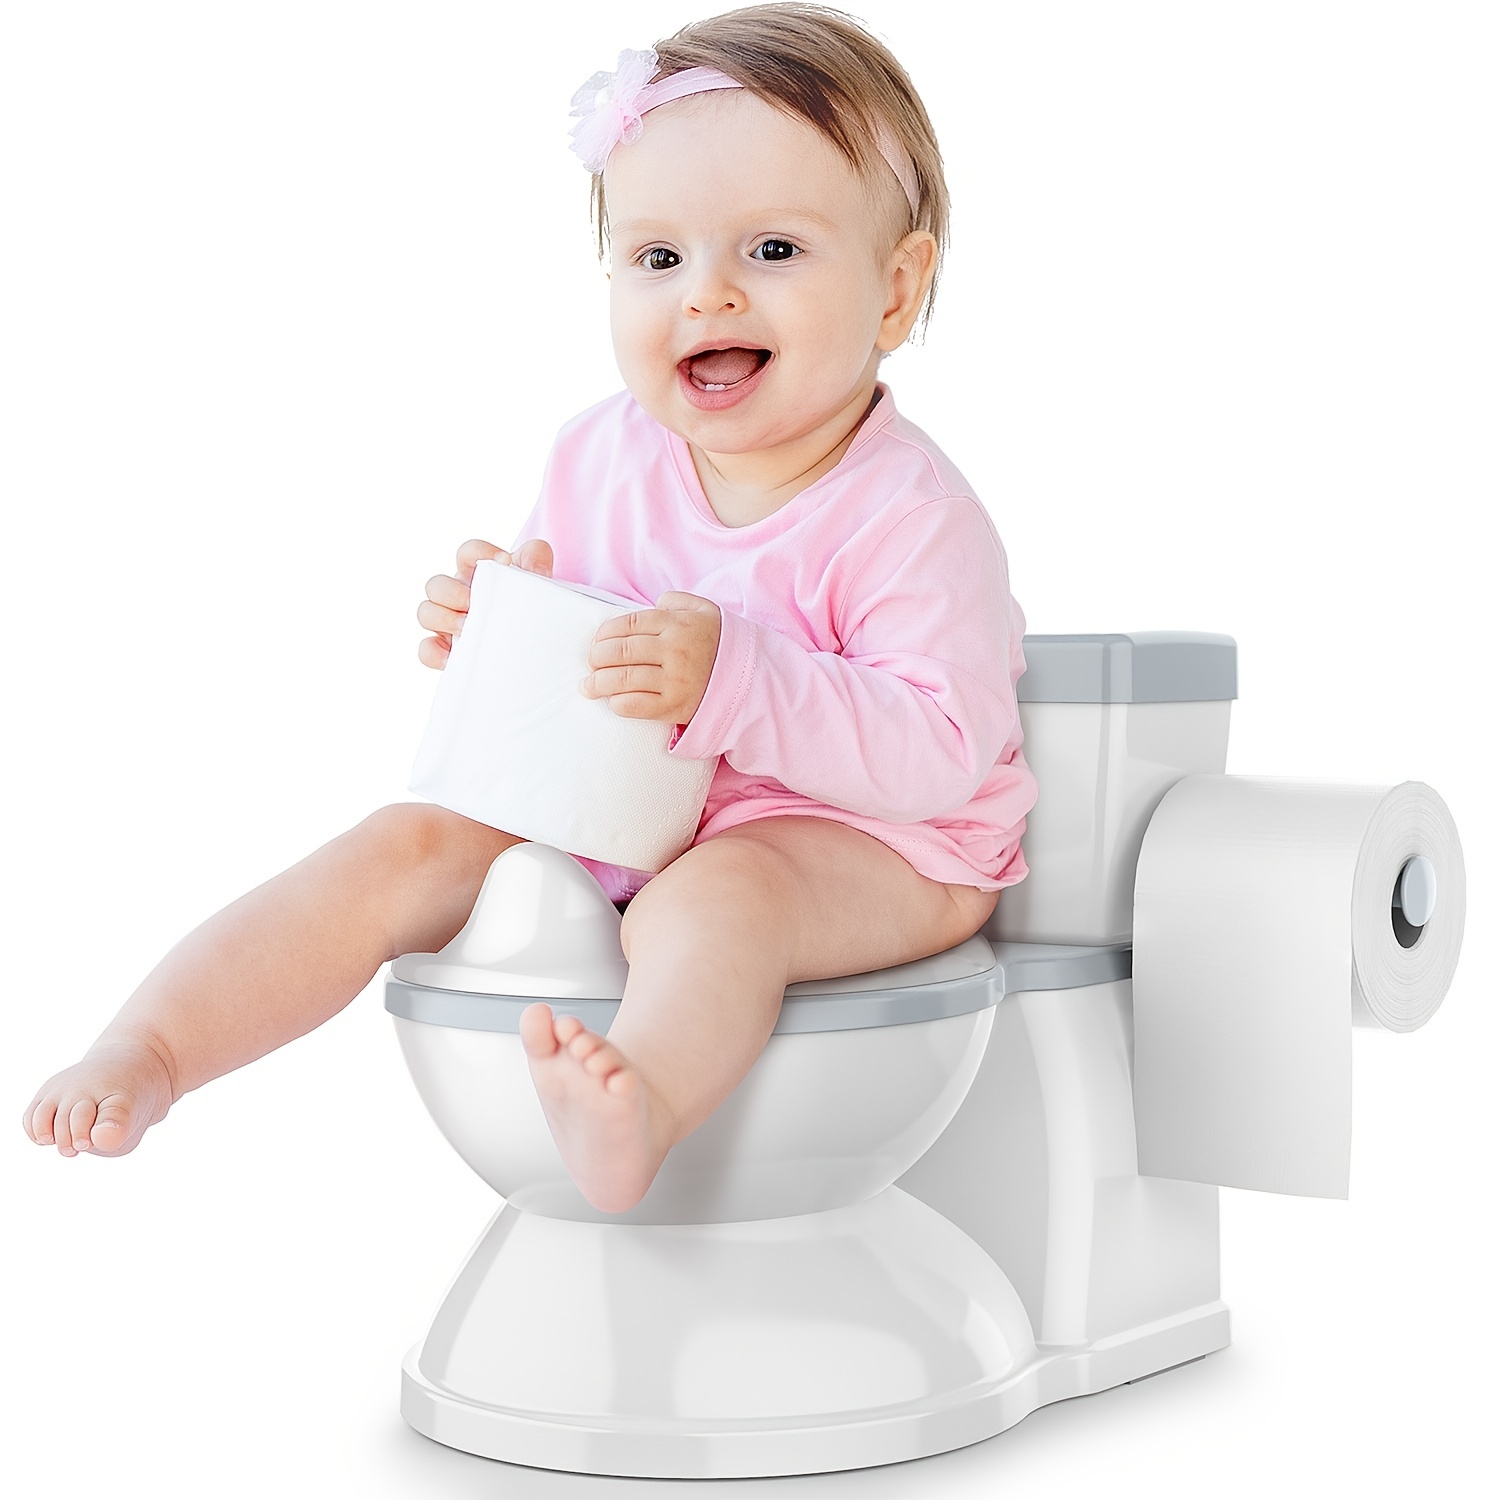 Elixir - Siège de toilette pour enfants - Siège d'apprentissage de